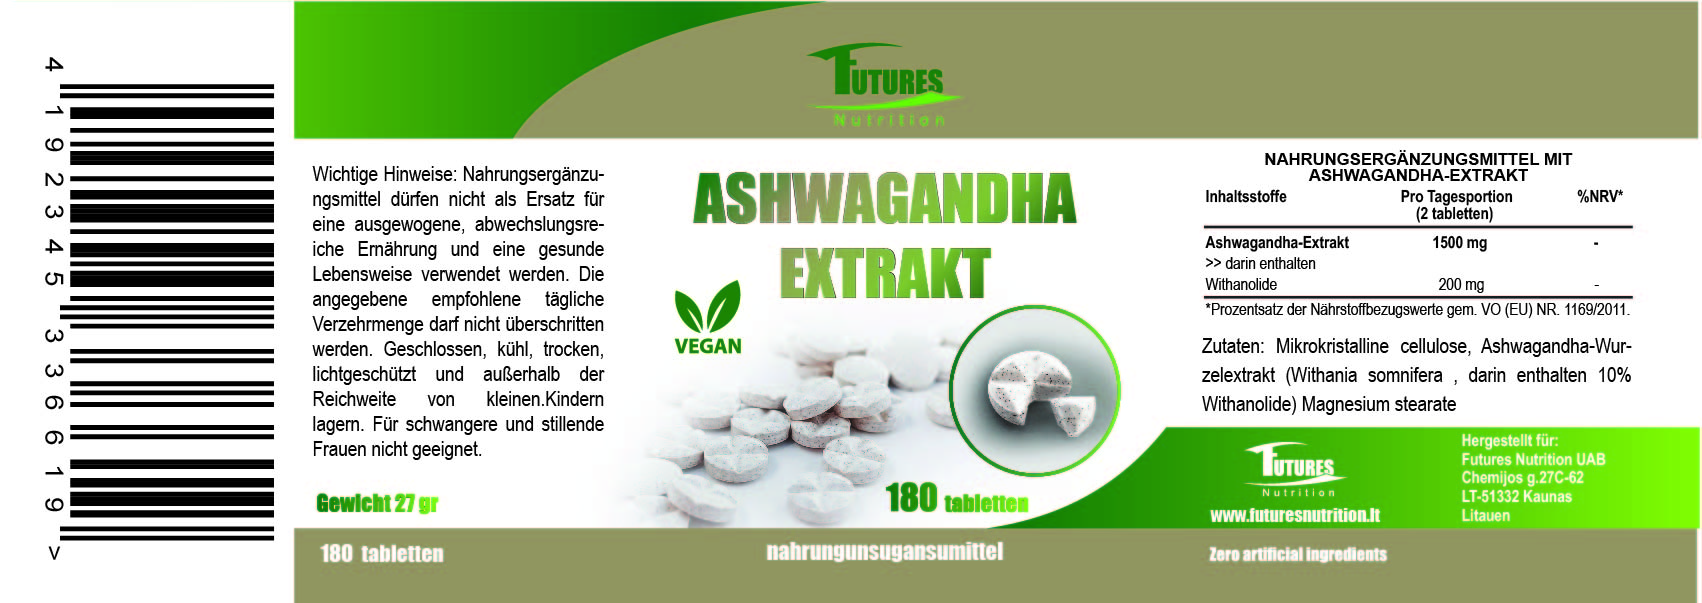 Wyciąg z Ashwagandha 180 tabletek - łatwe do radzenia sobie z poziomem stresu